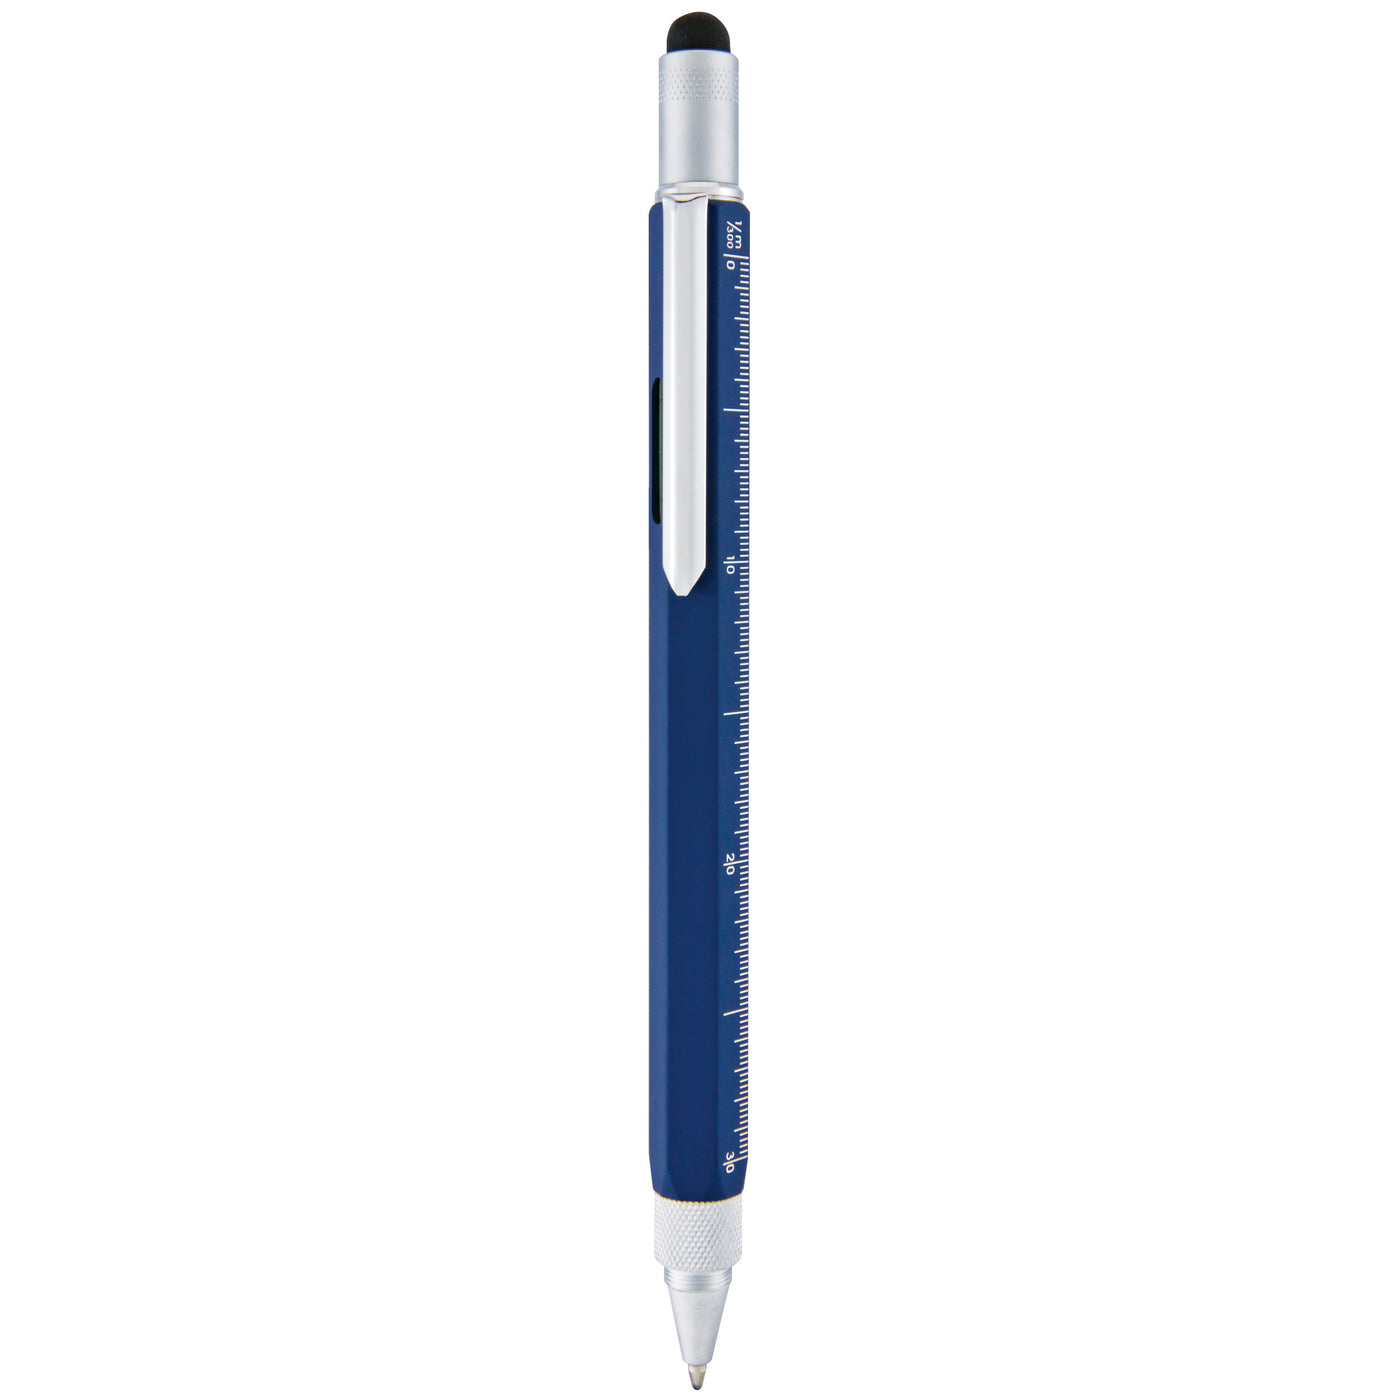 Monteverde One Touch Stylus Tool Blue Ballpoint Pen